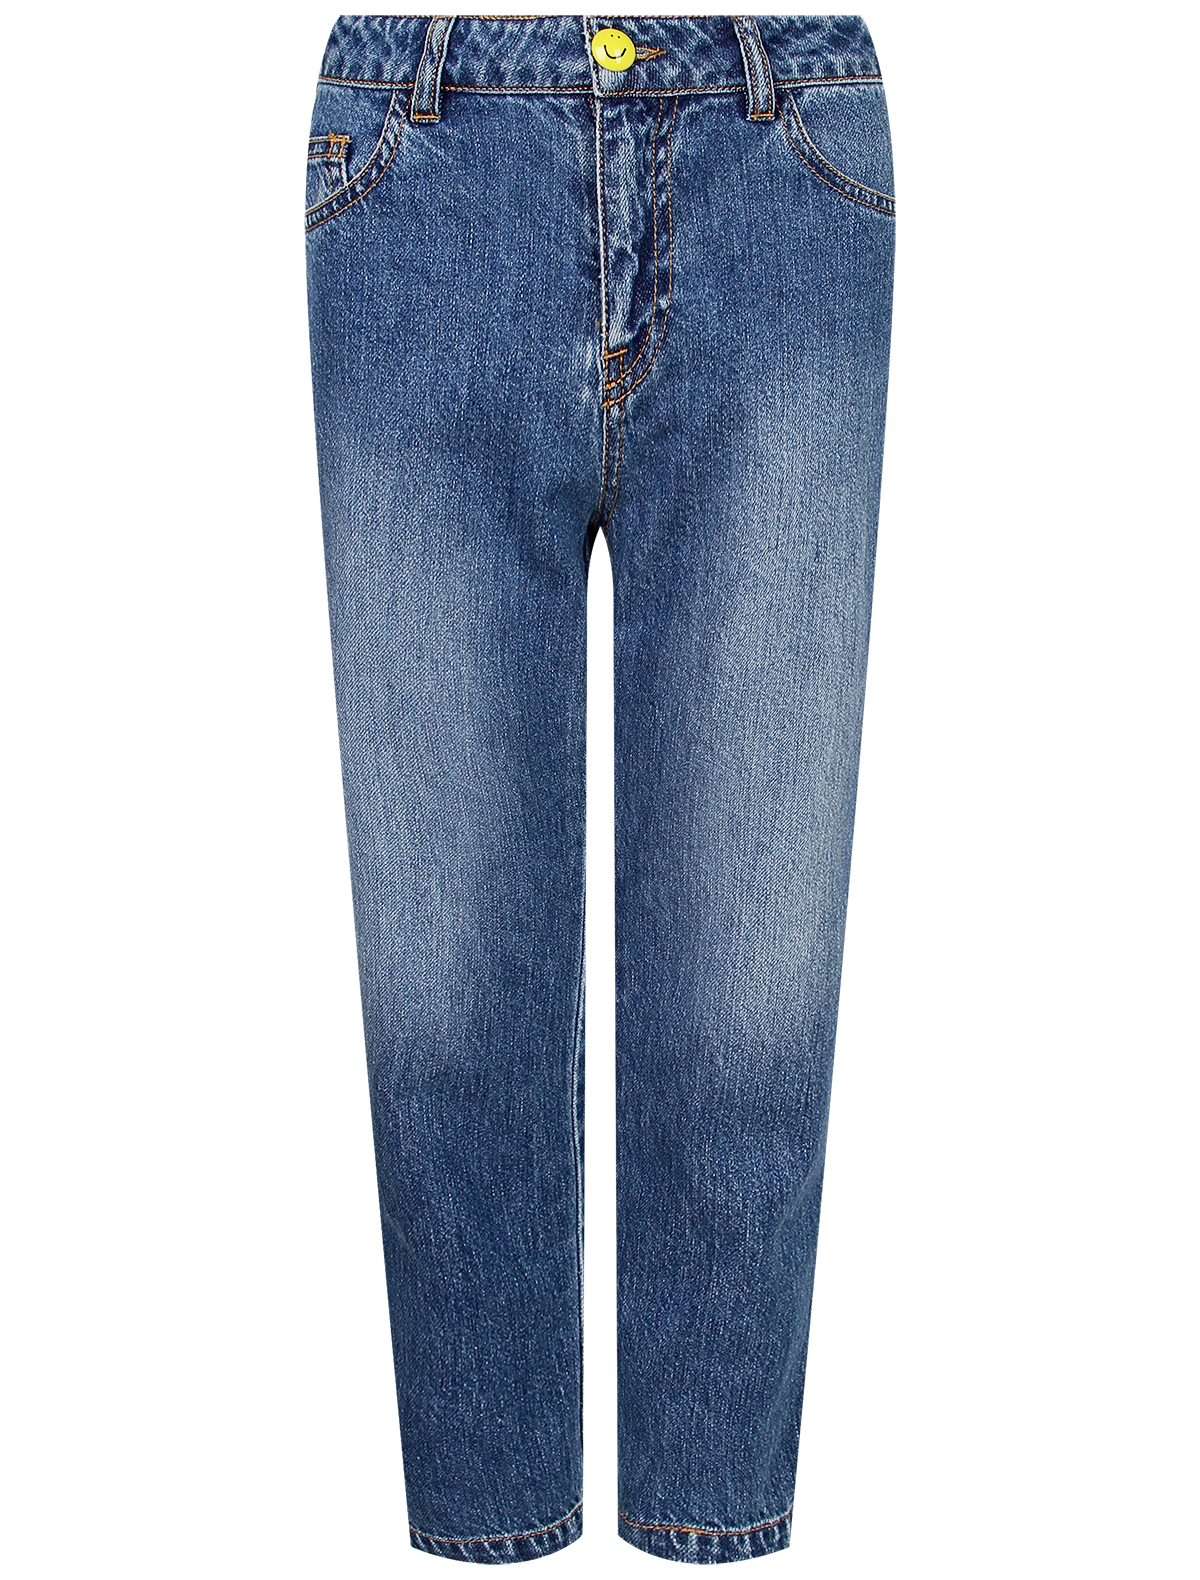 джинсы philosophy для девочки, синие